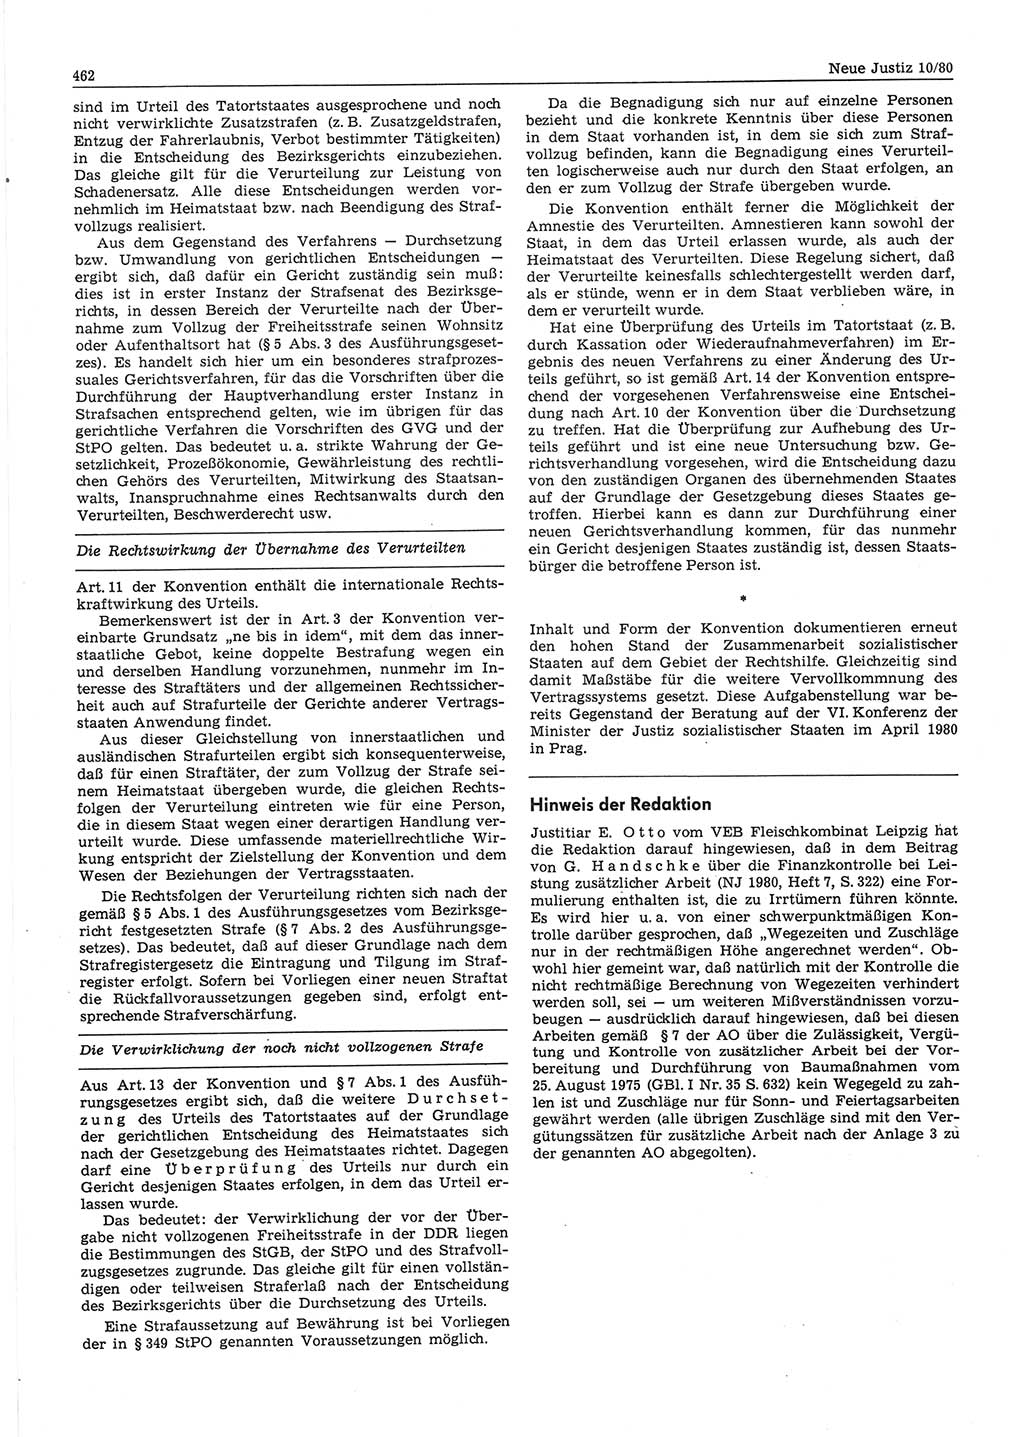 Neue Justiz (NJ), Zeitschrift für sozialistisches Recht und Gesetzlichkeit [Deutsche Demokratische Republik (DDR)], 34. Jahrgang 1980, Seite 462 (NJ DDR 1980, S. 462)